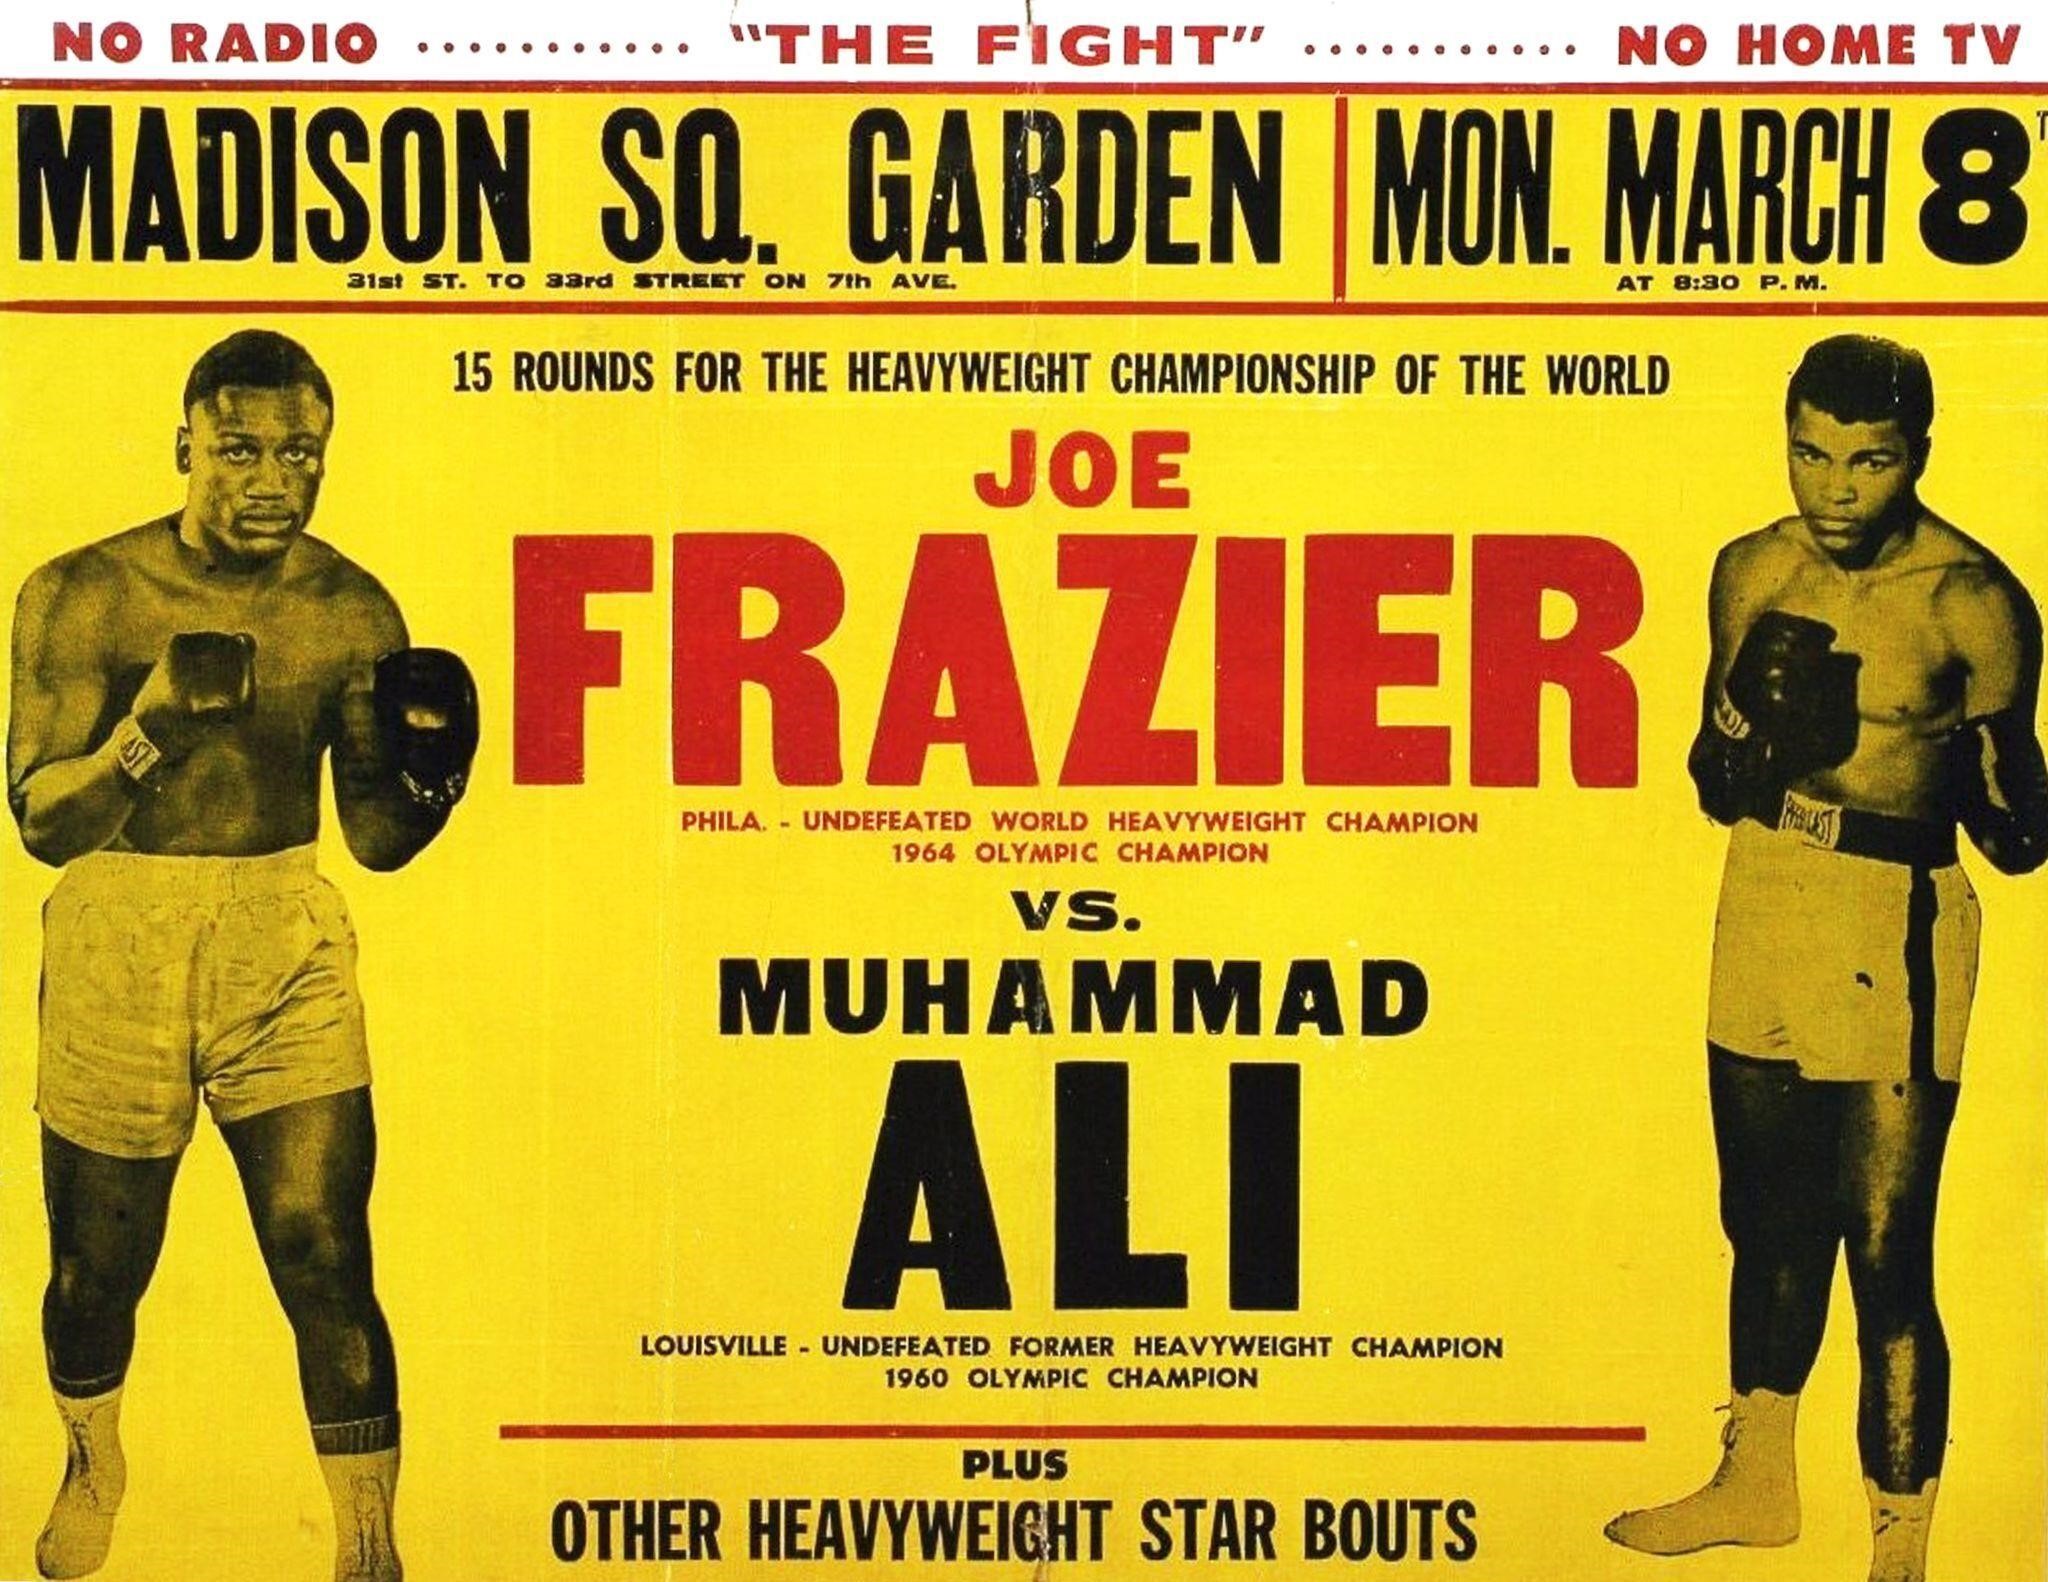 Frazier    Ali    Fight Poster   Reprint